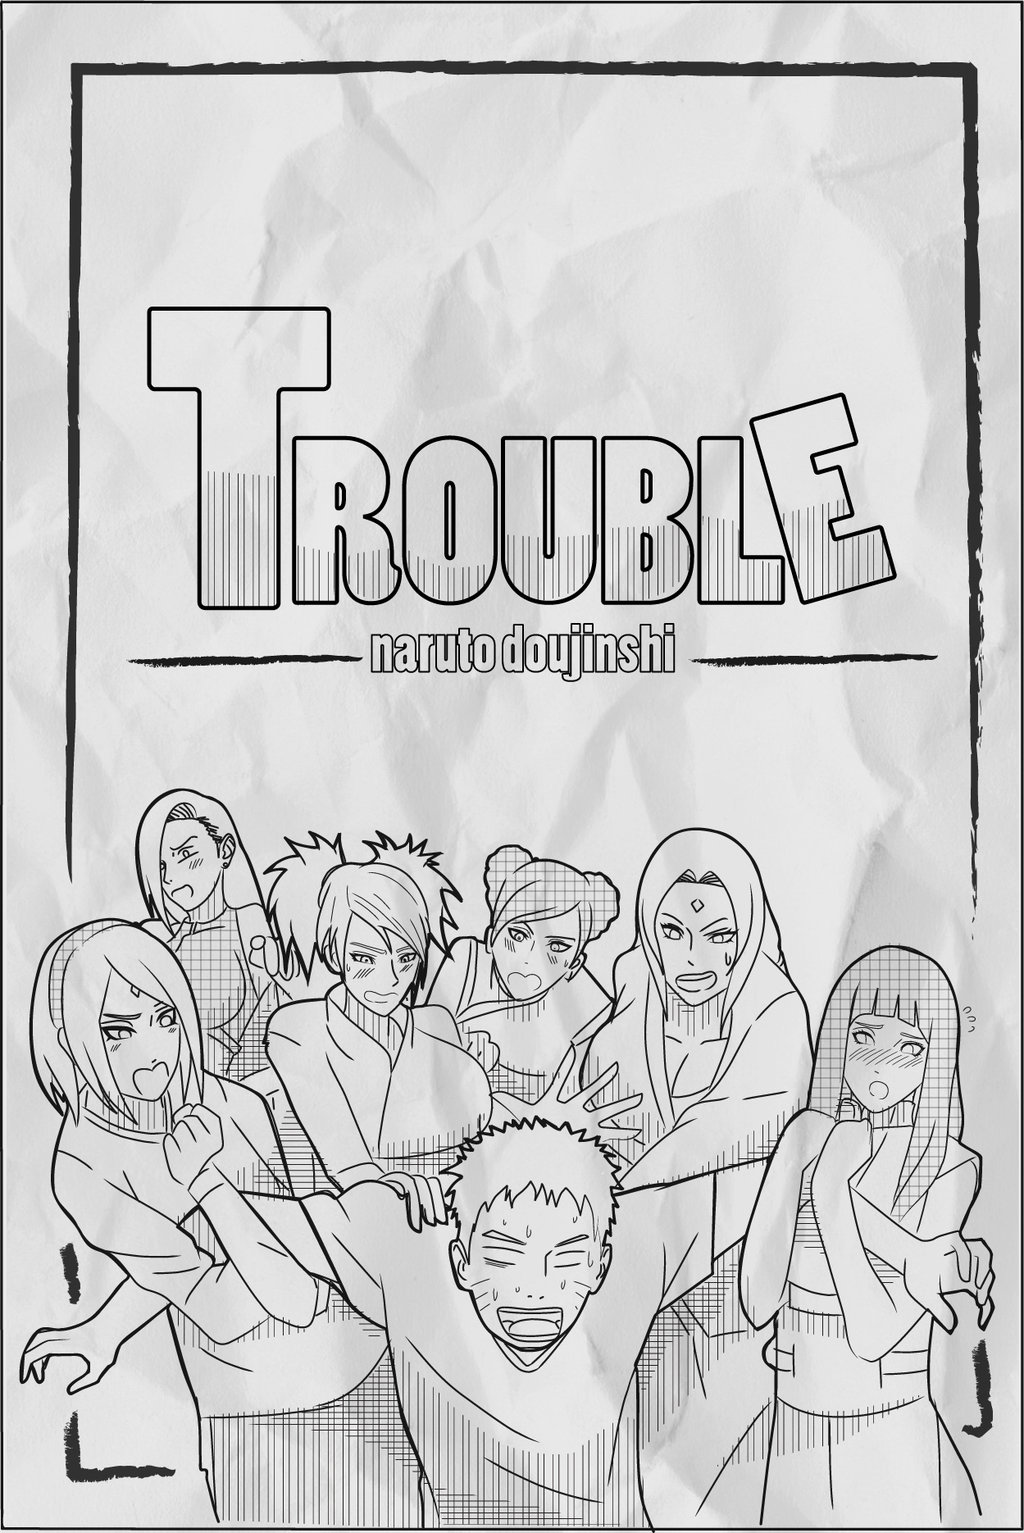 Trouble  by Indy_riquez Porn Comics